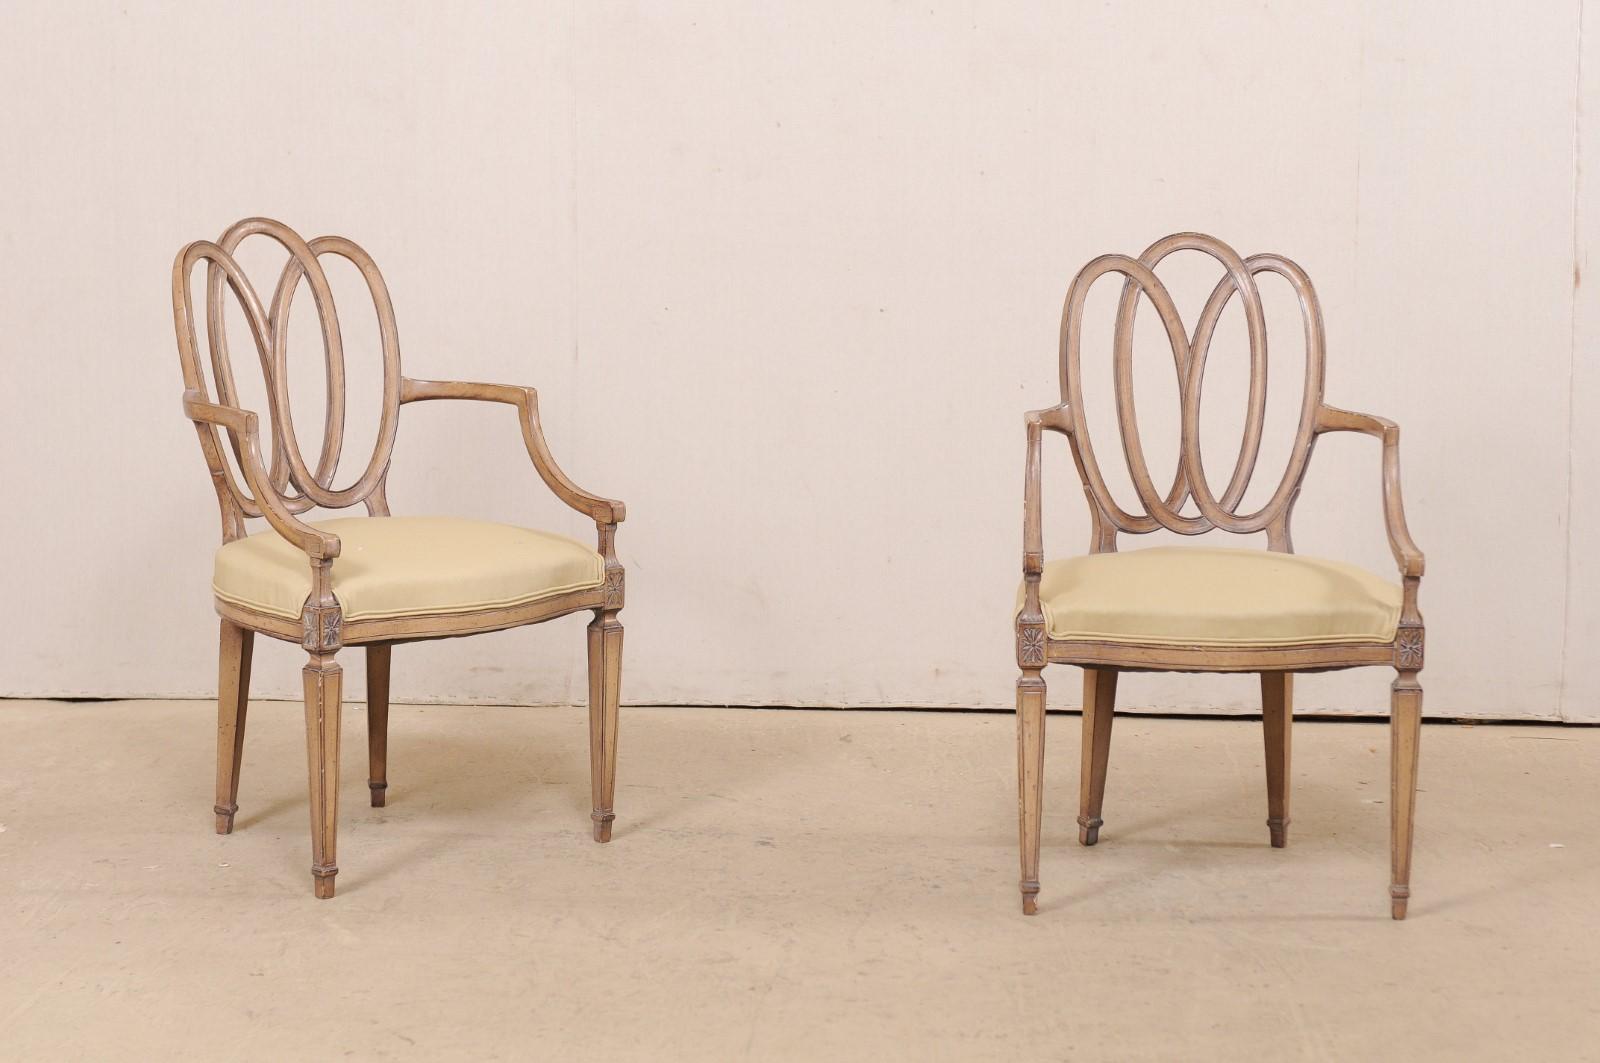 Une paire de fauteuils italiens en bois sculpté avec des sièges rembourrés du milieu du 20e siècle. Cette paire de chaises d'appoint d'Italie a un dossier ovale percé et joliment entrelacé, des étoiles sculptées ornent le tablier et les rails de